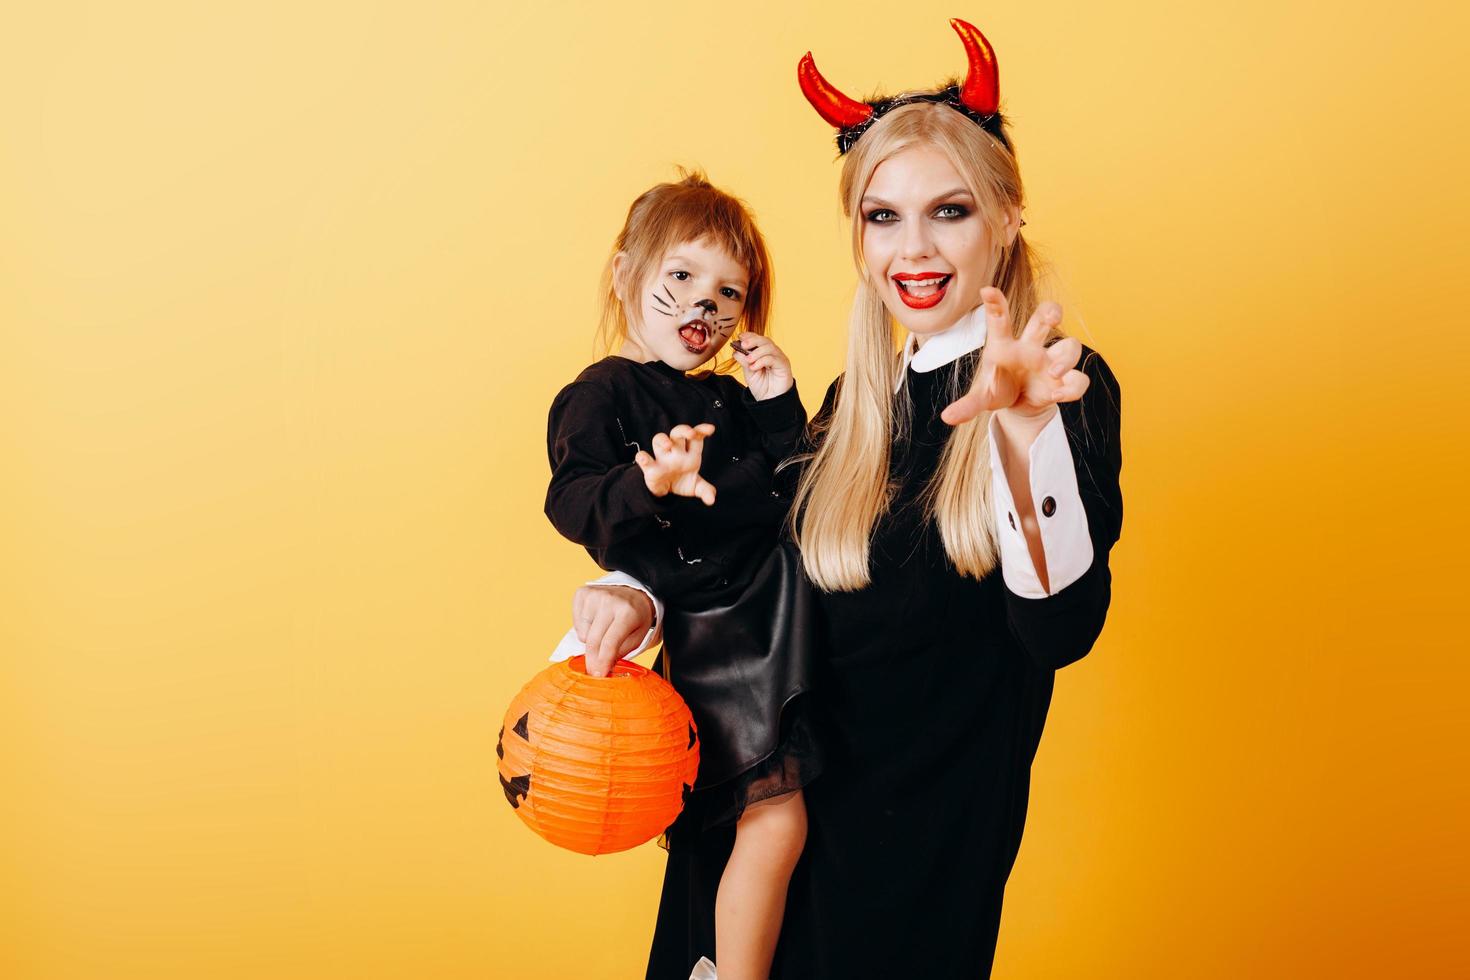 glückliche Emotion der Teufelsfrau, die vor einem gelben Hintergrund steht und ein kleines Mädchen hält foto